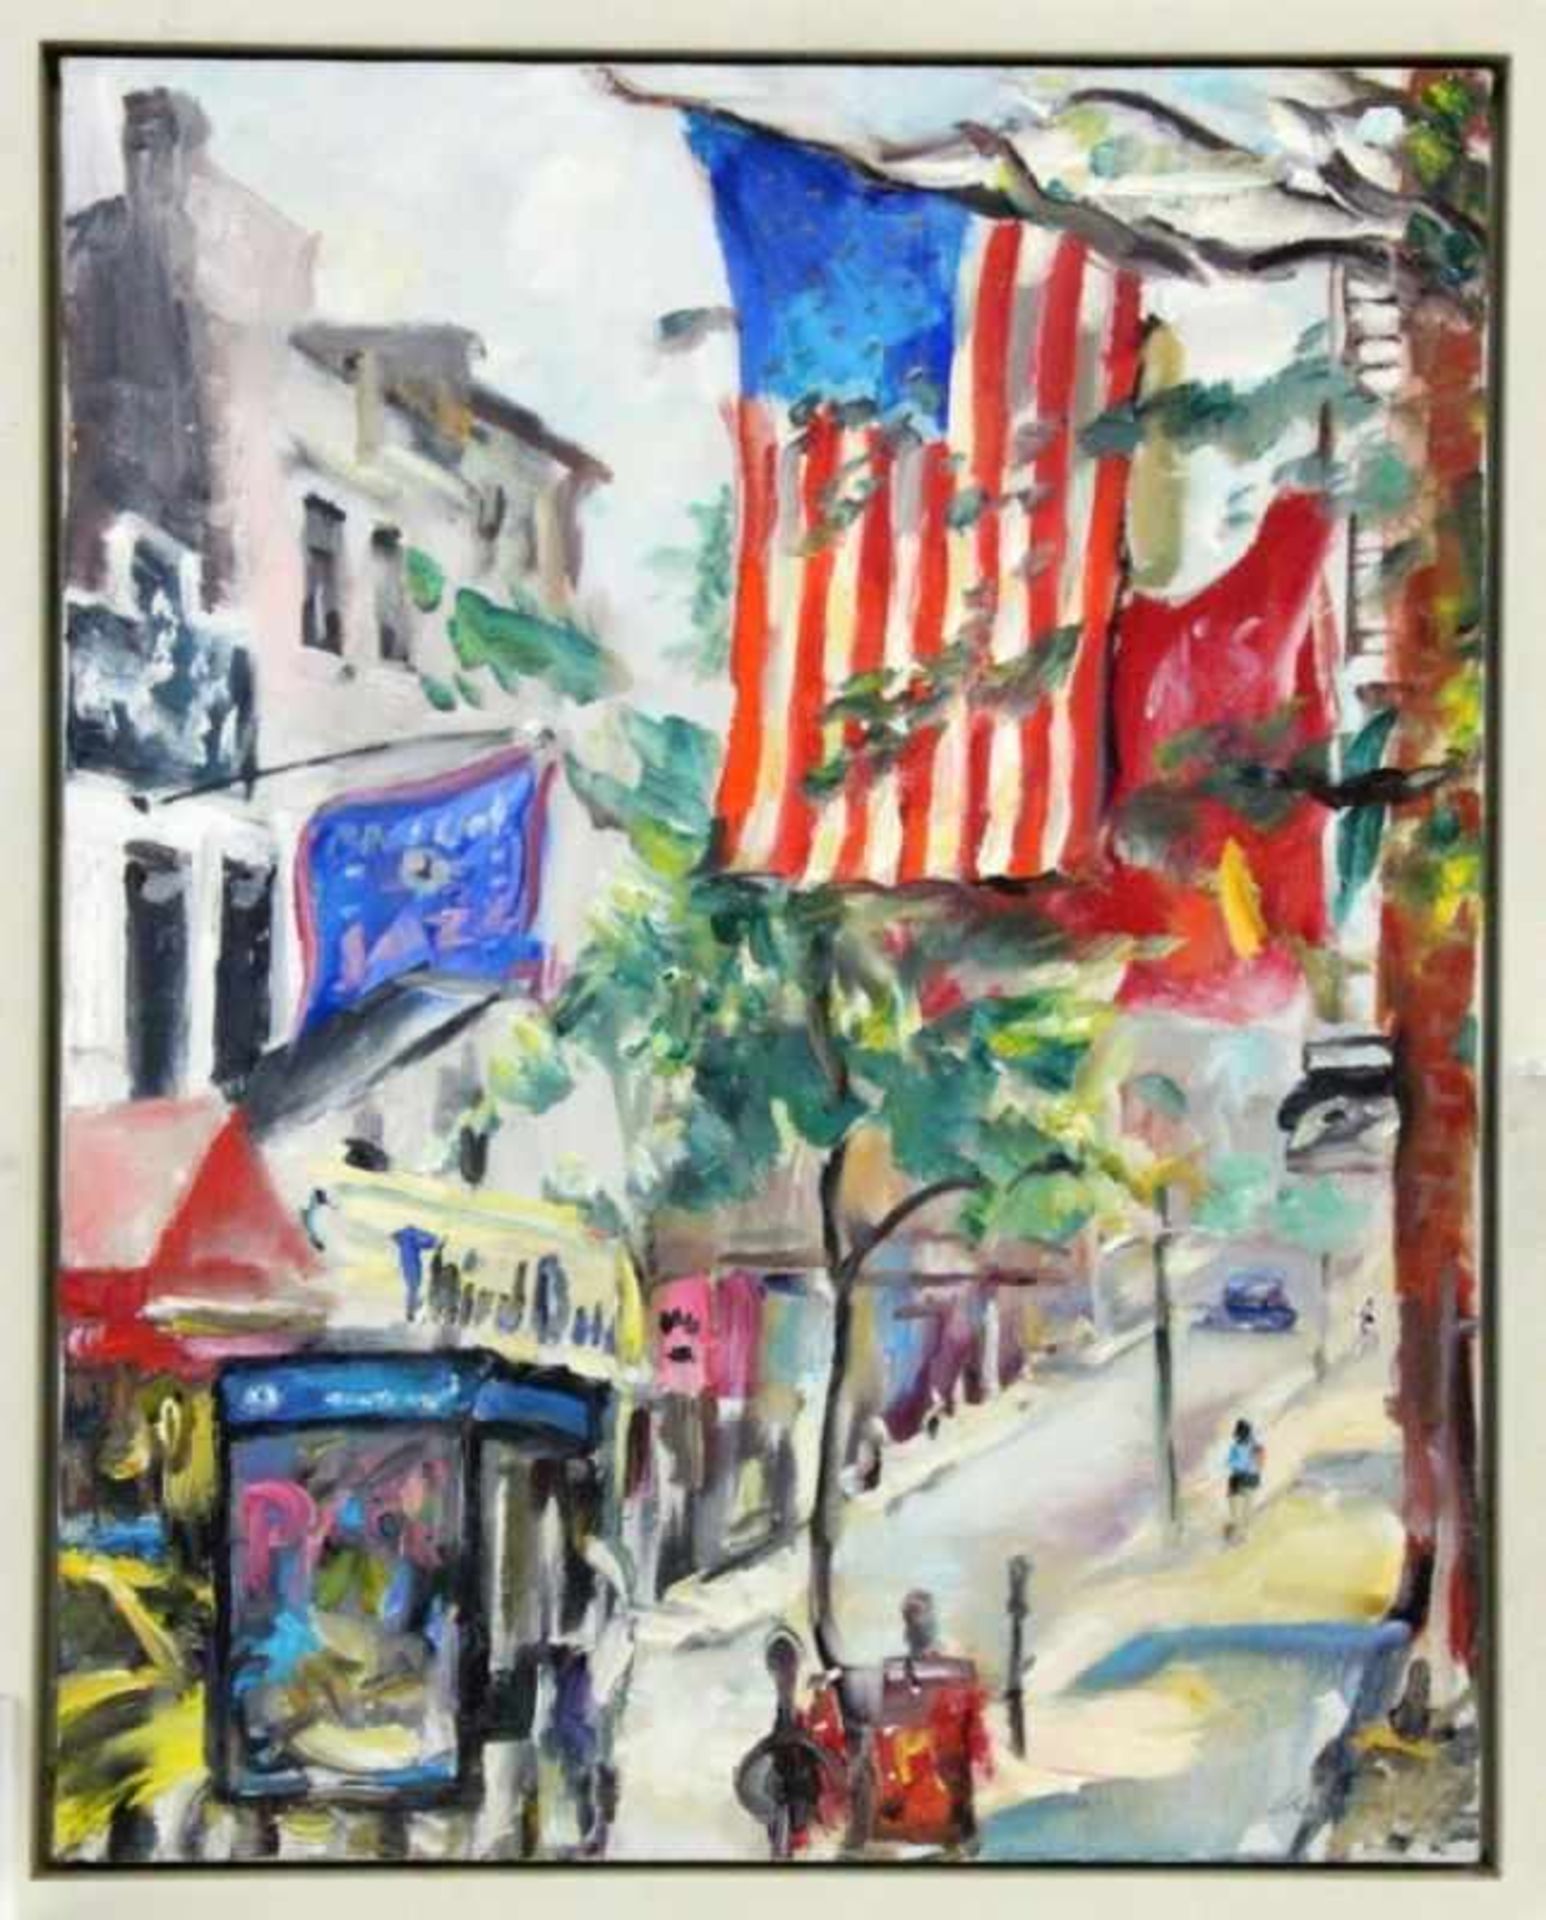 LEIPPERT, JÜRGENStuttgart 1944. Original title: New York, 6 Ave., 3 St., Village. Oil on canvas,